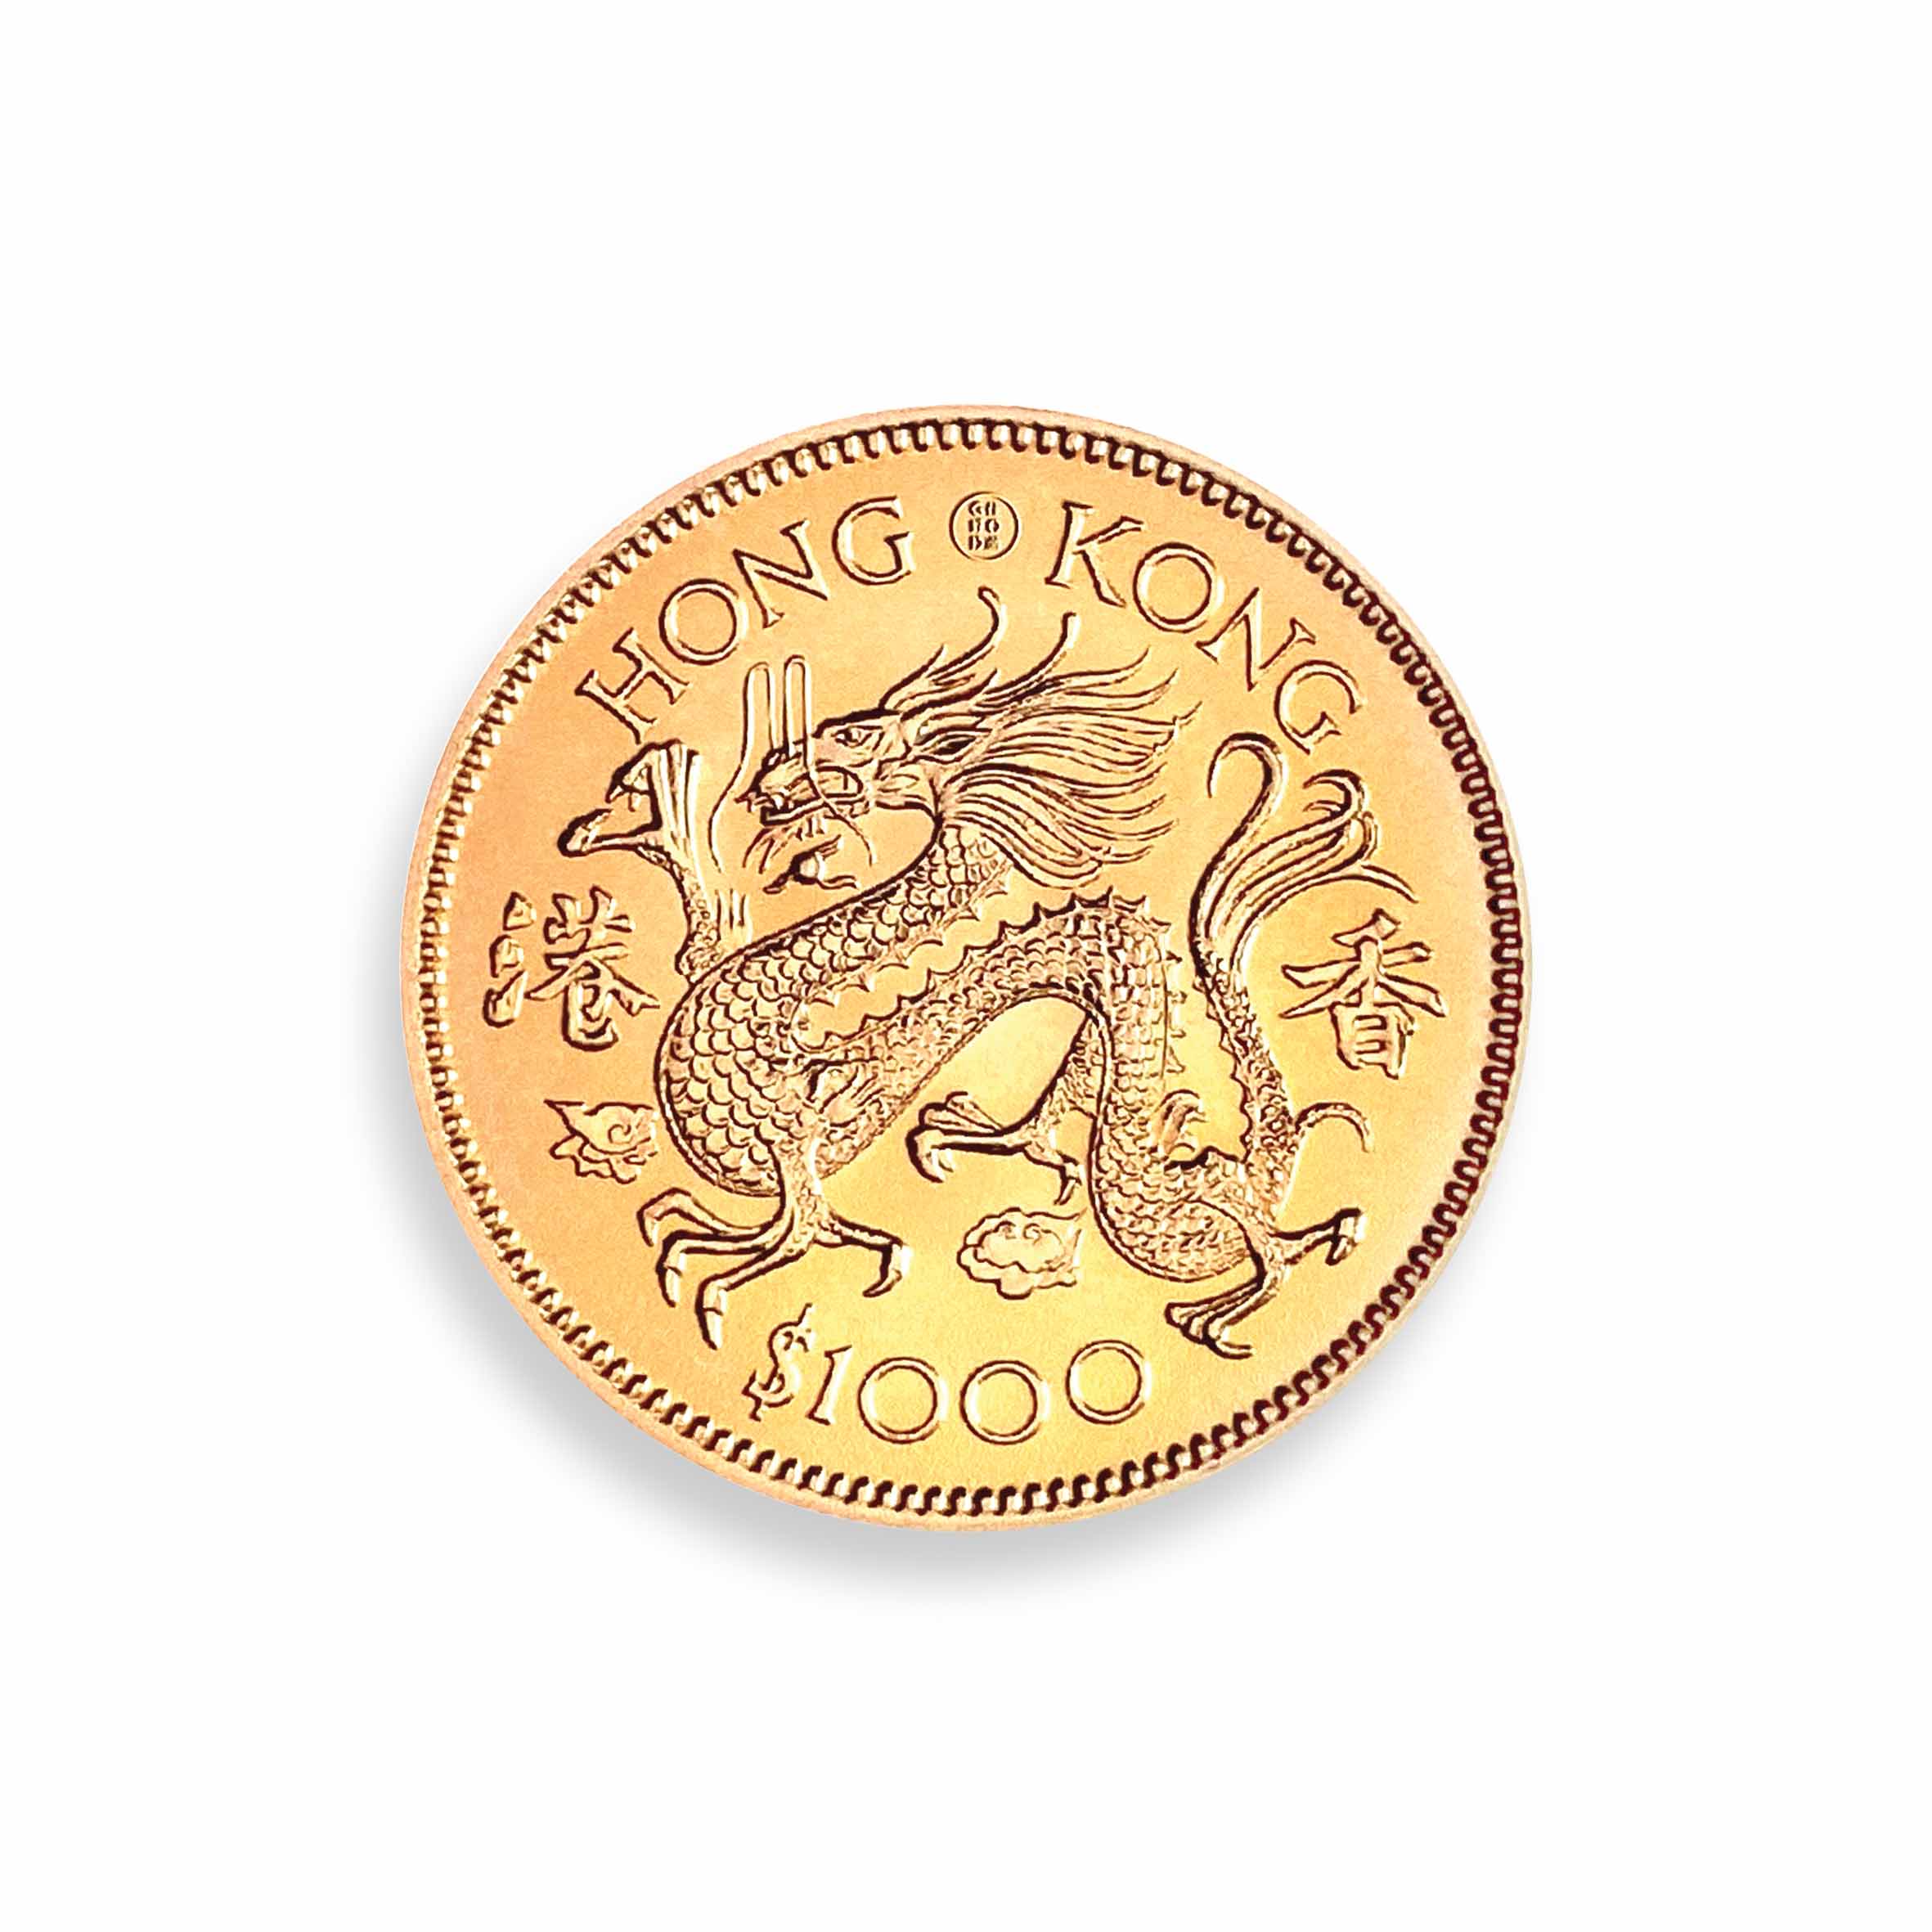 Hong Kong Coins Coasters Set